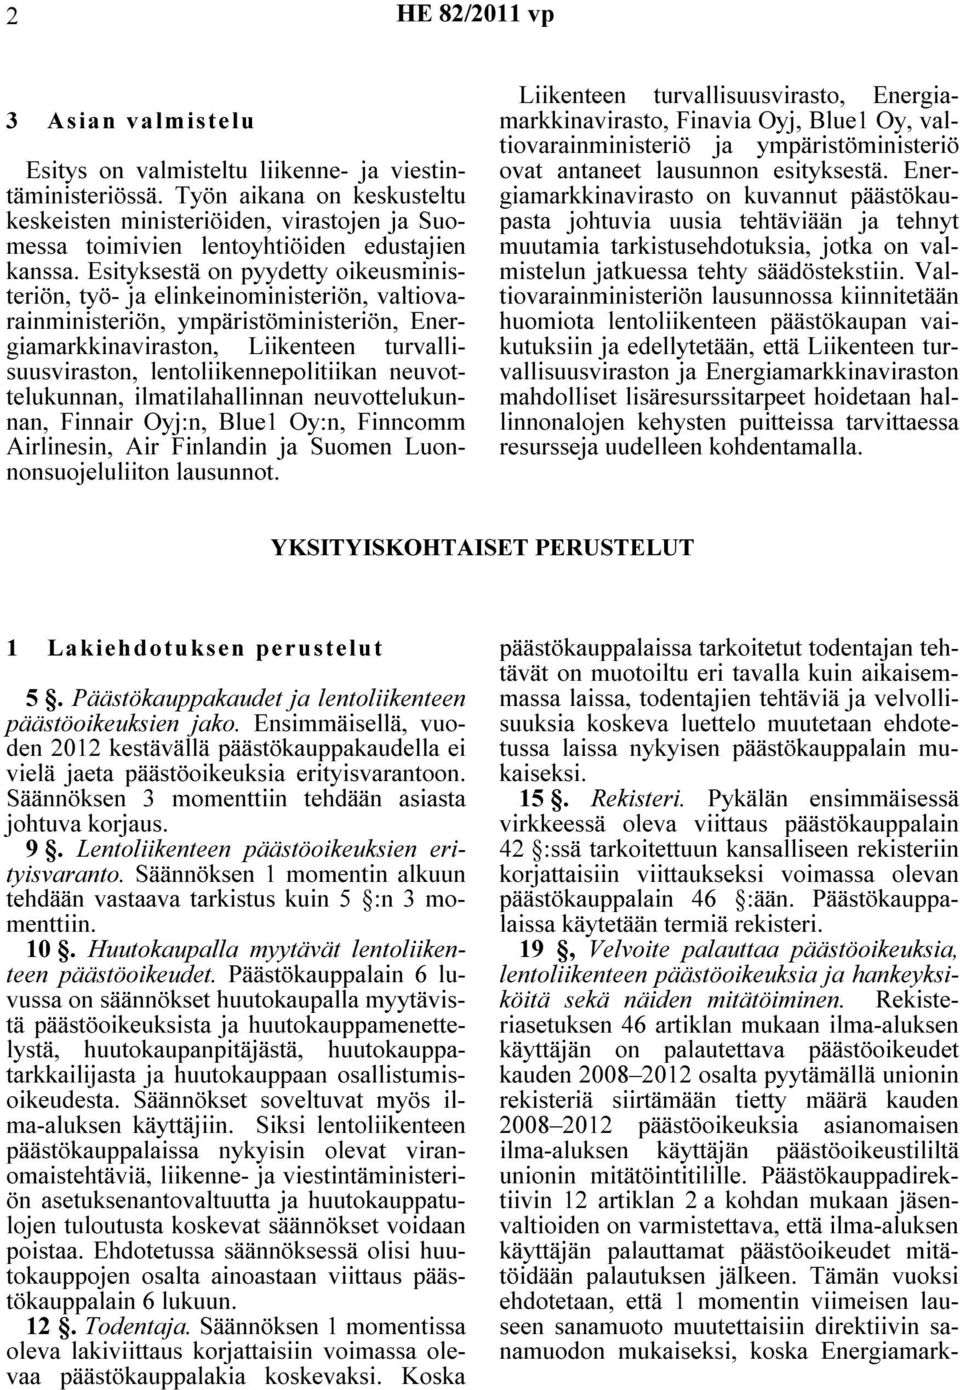 lentoliikennepolitiikan neuvottelukunnan, ilmatilahallinnan neuvottelukunnan, Finnair Oyj:n, Blue1 Oy:n, Finncomm Airlinesin, Air Finlandin ja Suomen Luonnonsuojeluliiton lausunnot.